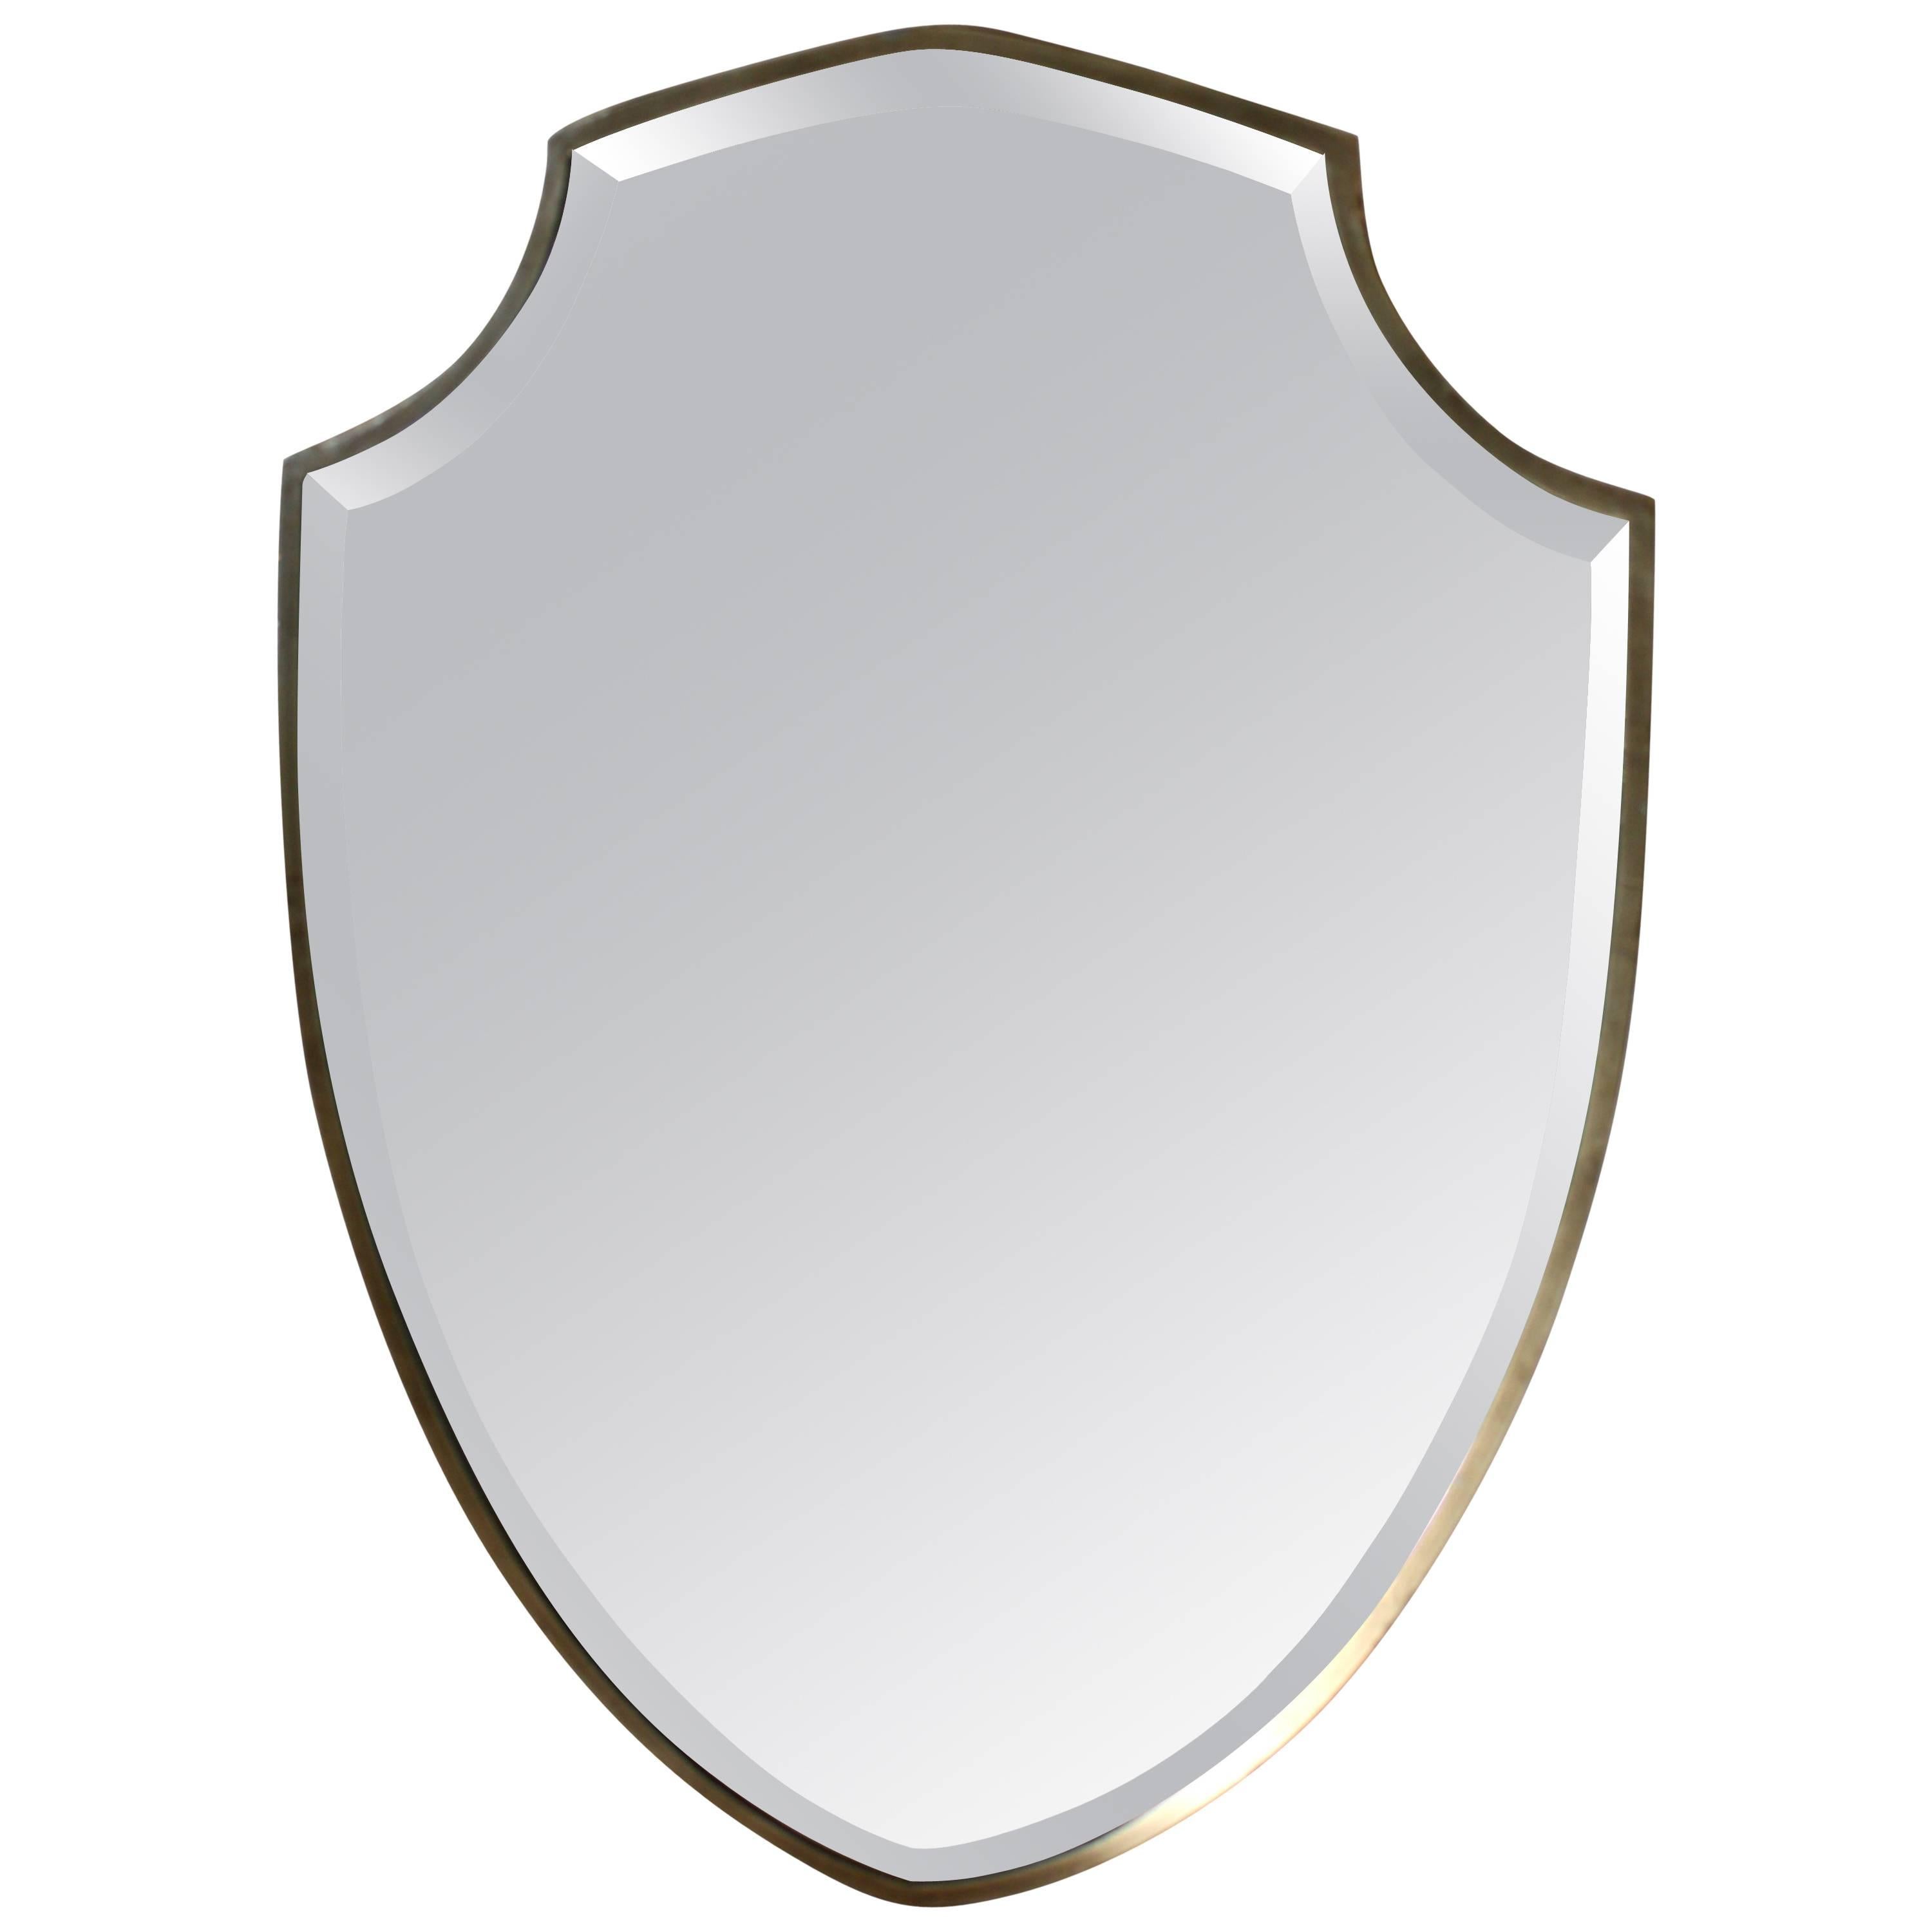 Shield Mirror For Sale